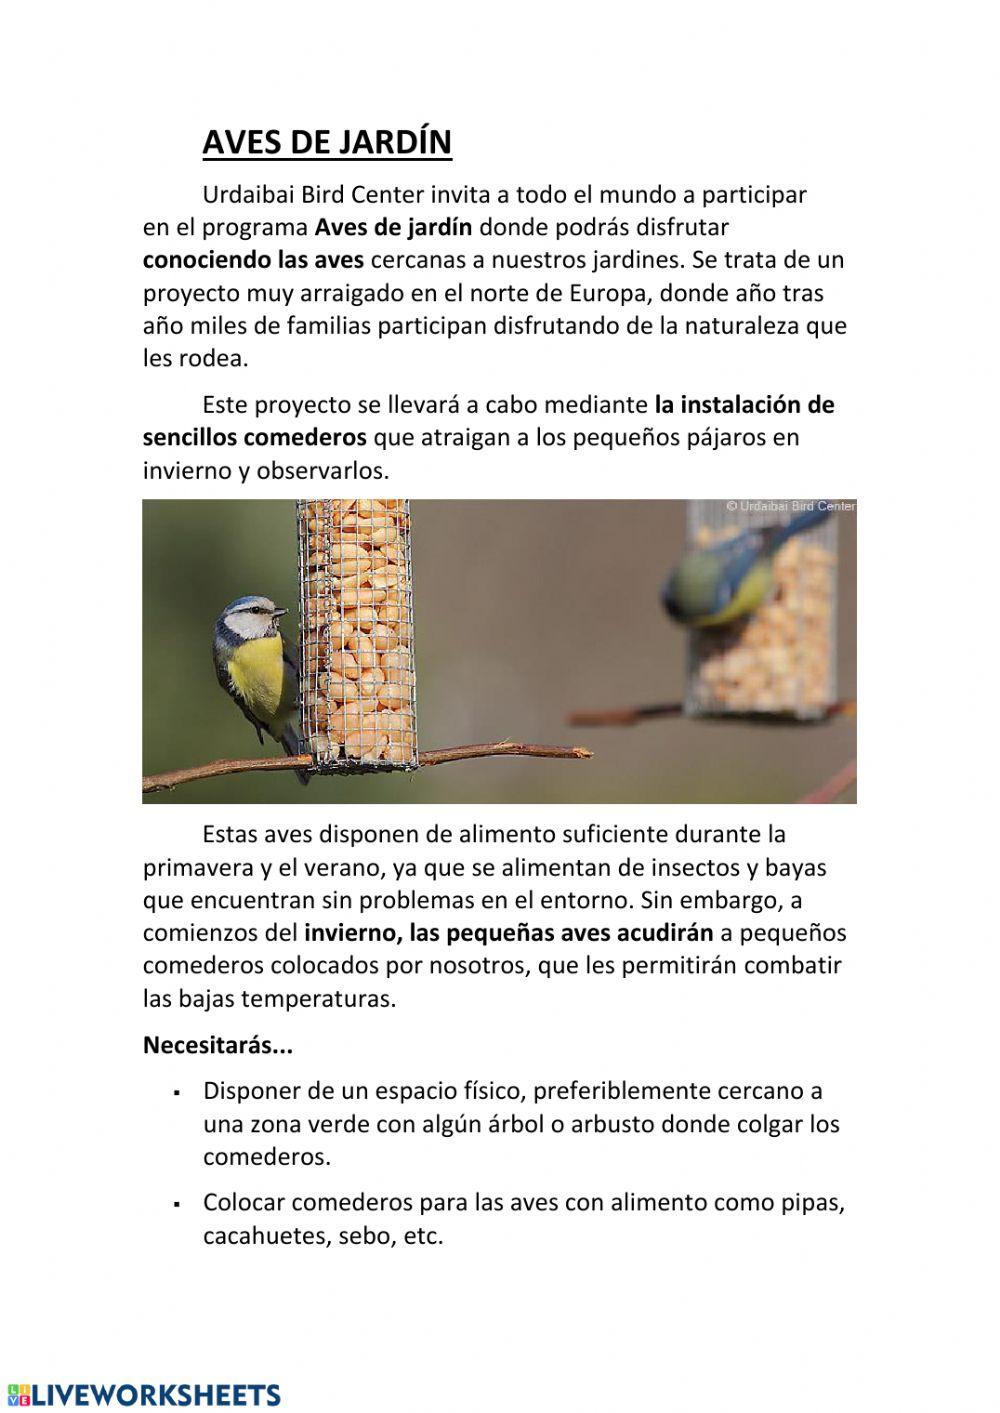 Comprensión: Aves de jardín